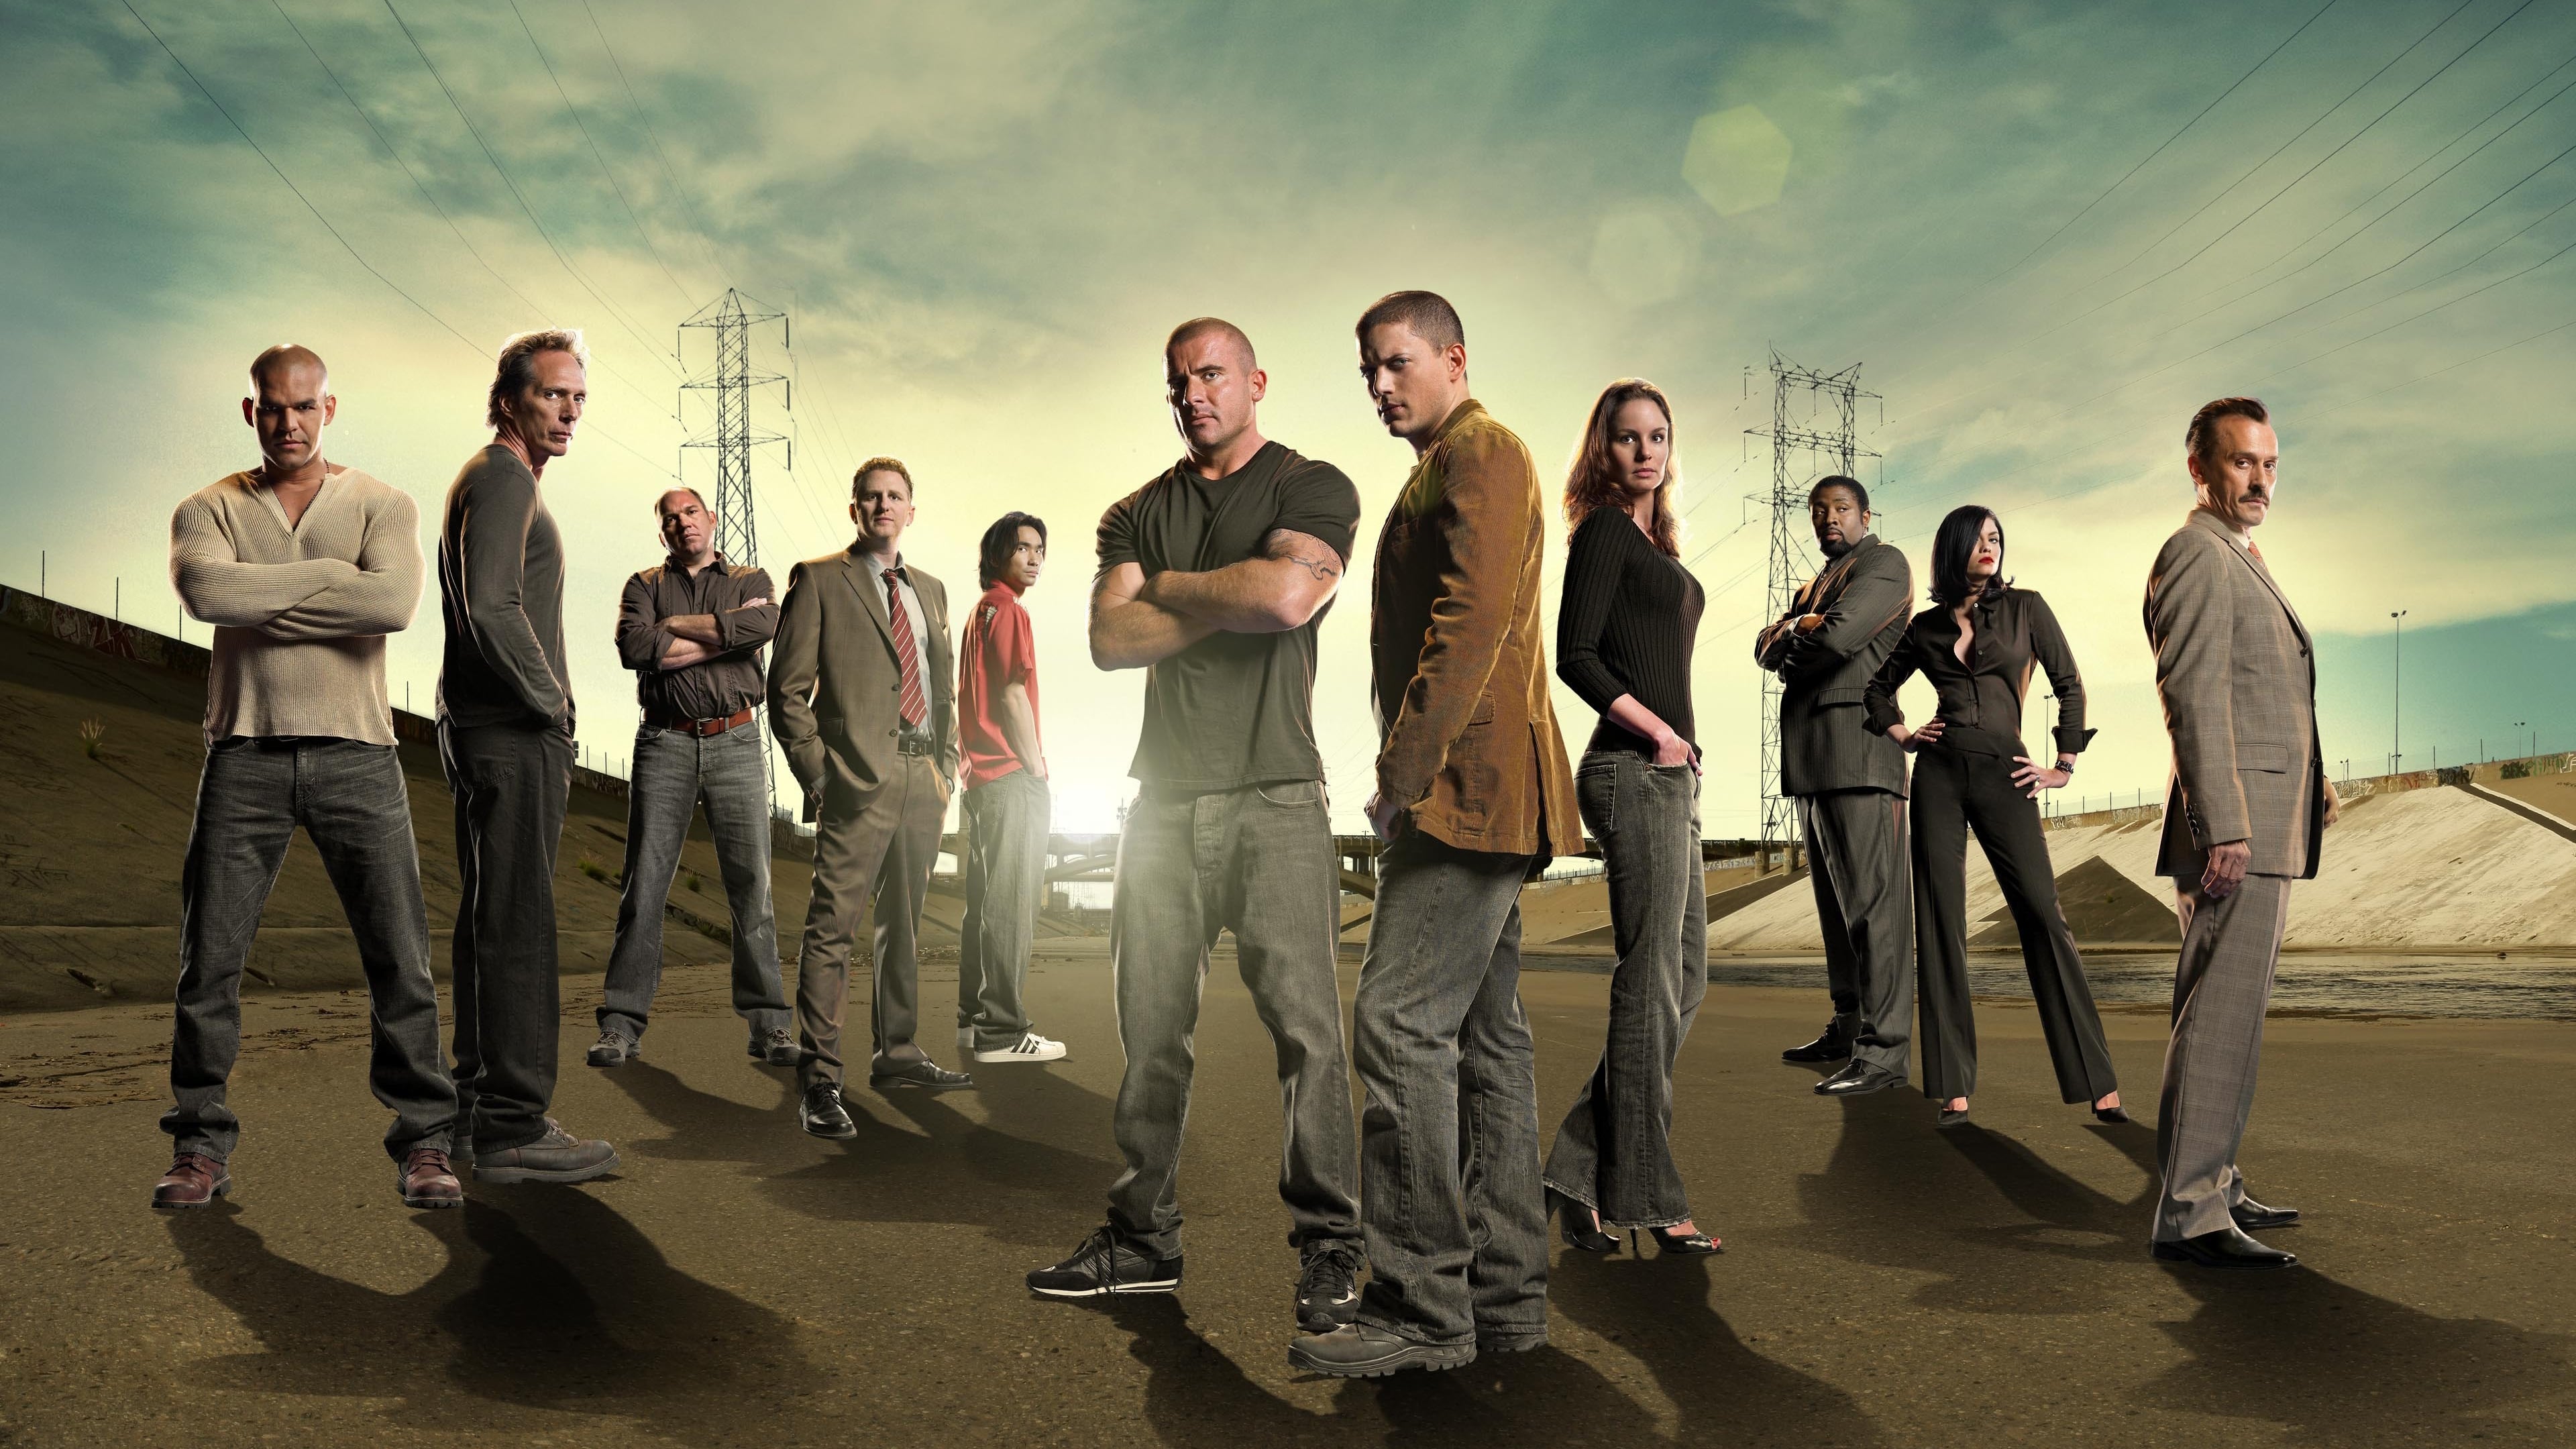 Hjemland Imponerende erektion The BEST episodes of Prison Break | Episode Ninja